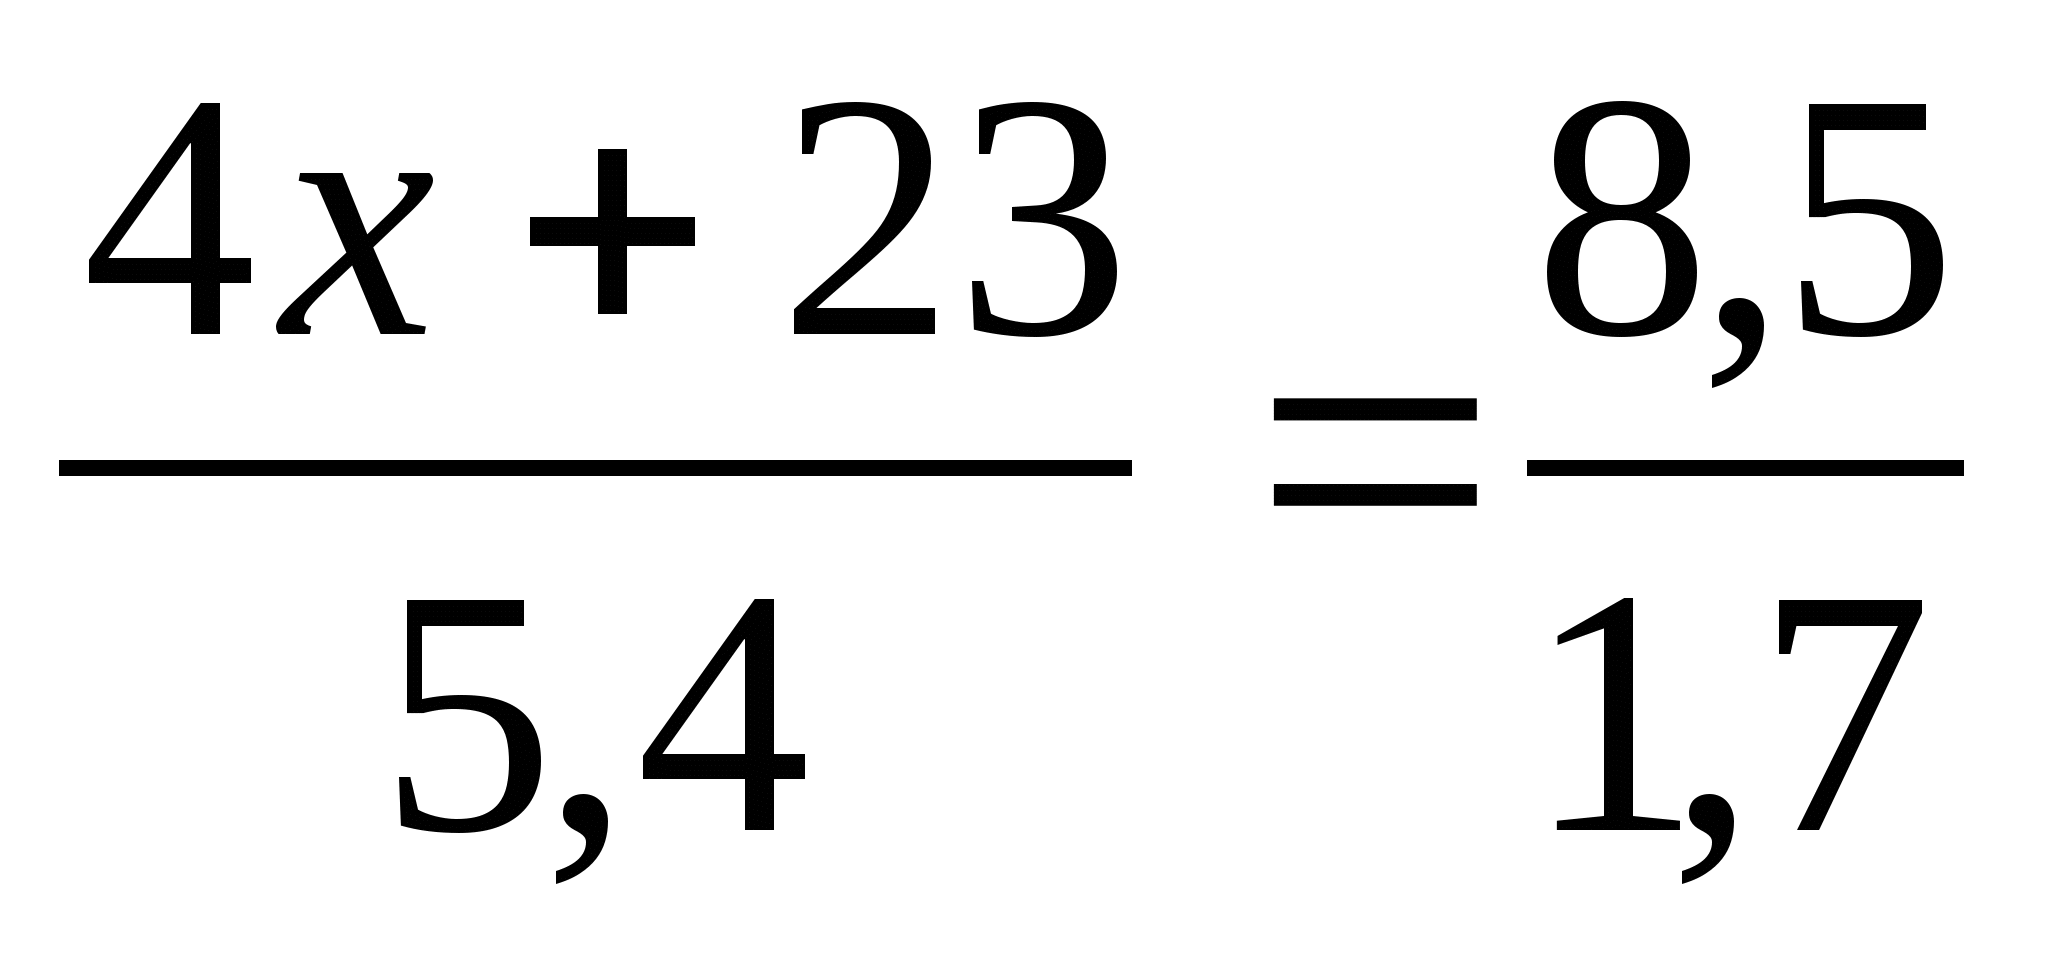 Тура және кері пропорция тақырыбына математика пәні бойынша 6 сынып оқушыларына арналған тест тапсырмалары